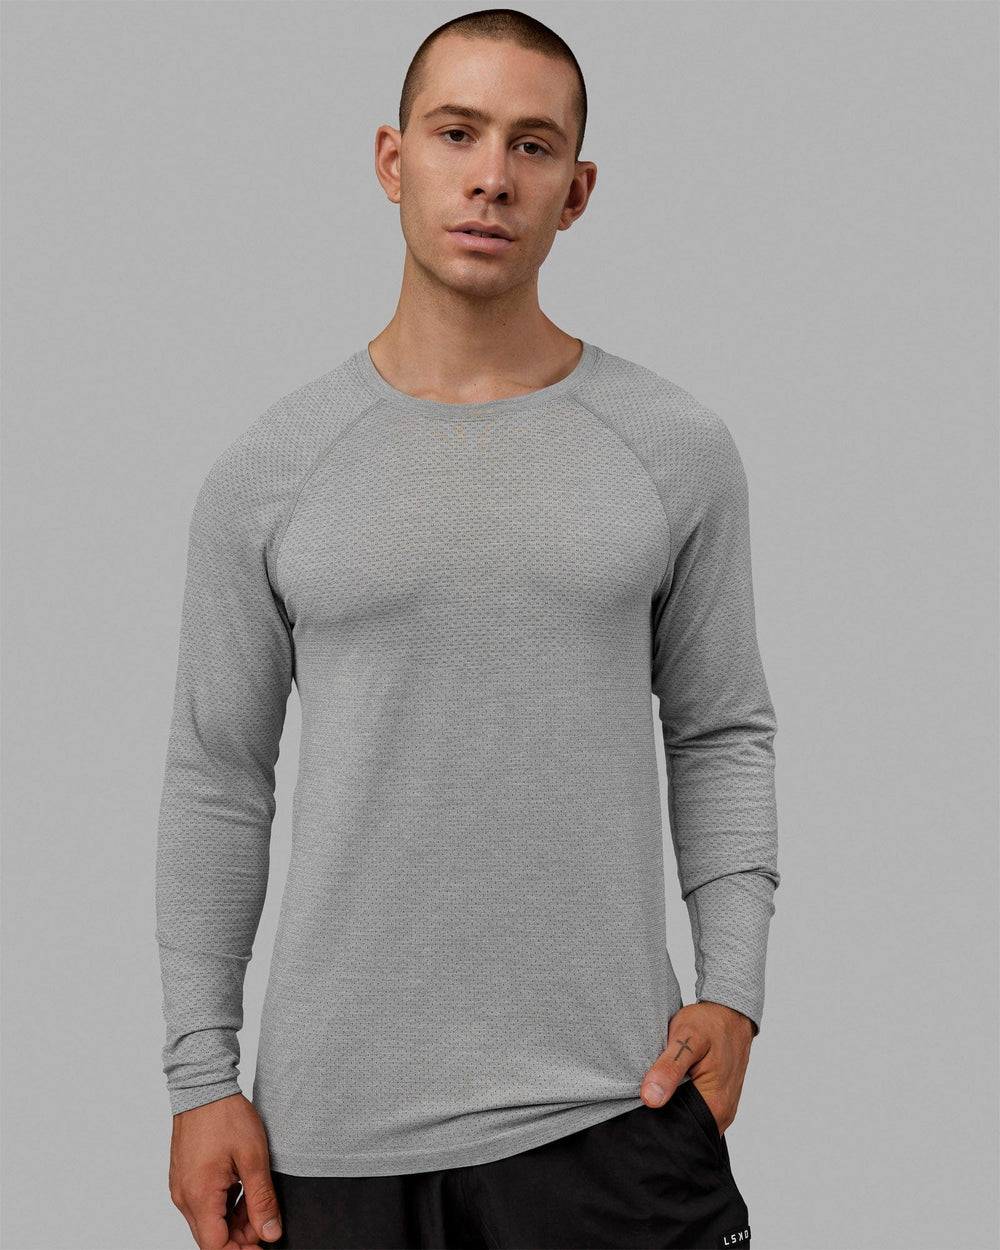 Man wearing AeroFLX+ Seamless Long Sleeve Tee - Lt Grey Marl